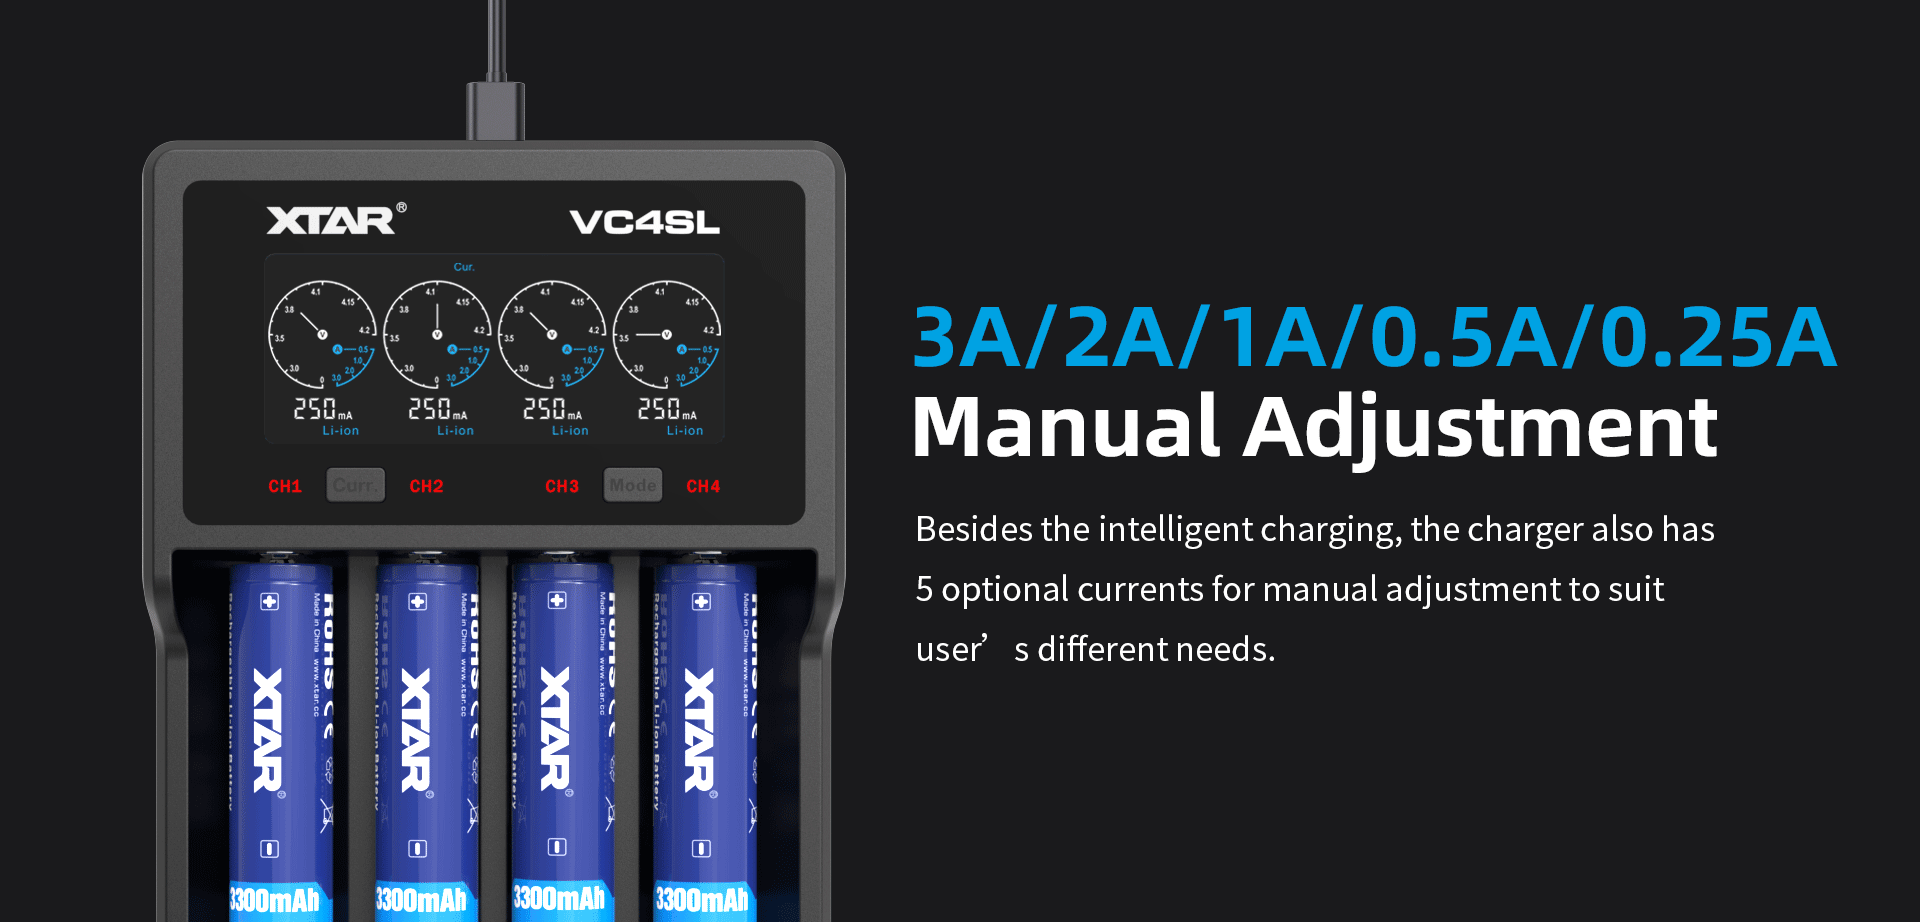 Chargez jusqu'à 4 accus en même temps avec le chargeur VC4SL Xtar et ajustez manuellement la vitesse de charge de chaque slot.